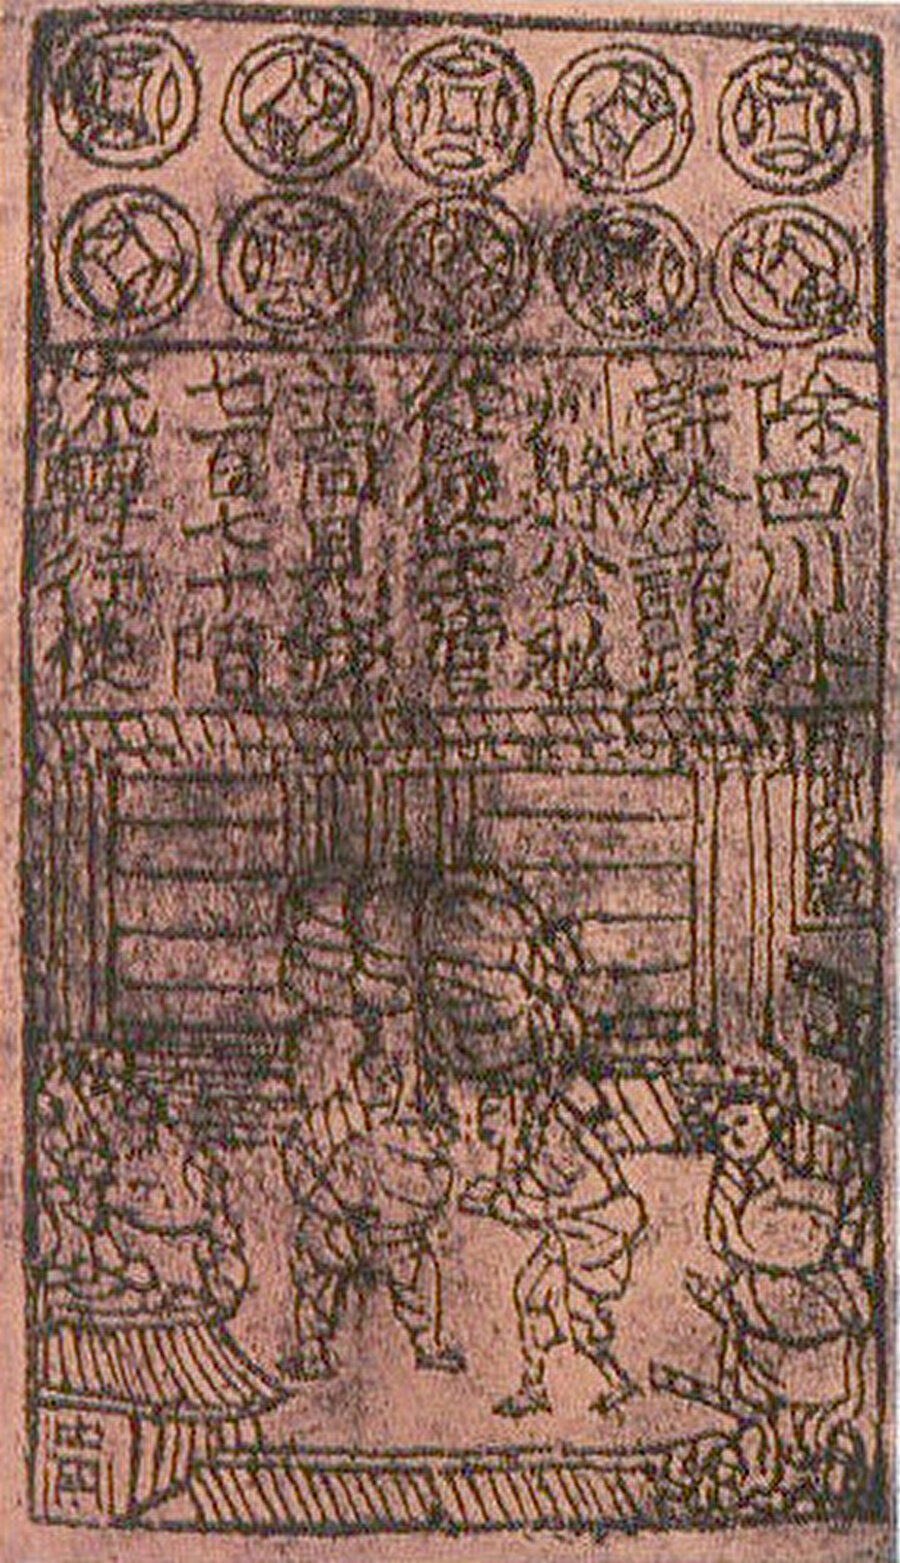 Çin'de kullanılmaya başlayan ilk kağıt para